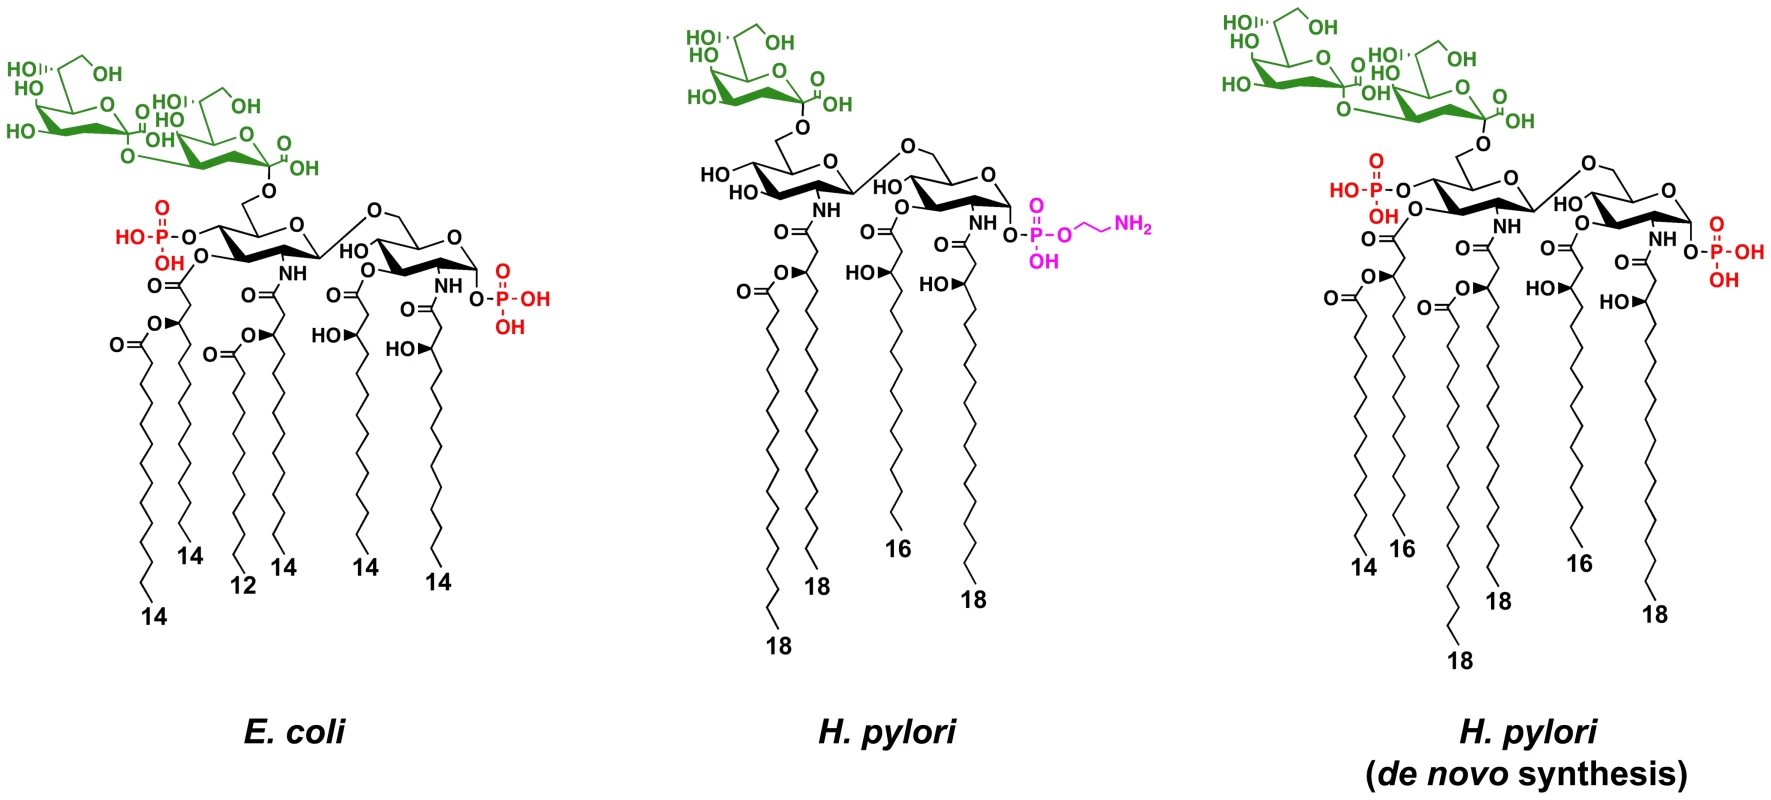 Chemical structures of the Kdo-lipid A domain of <i>E. coli</i> and <i>H. pylori</i>.